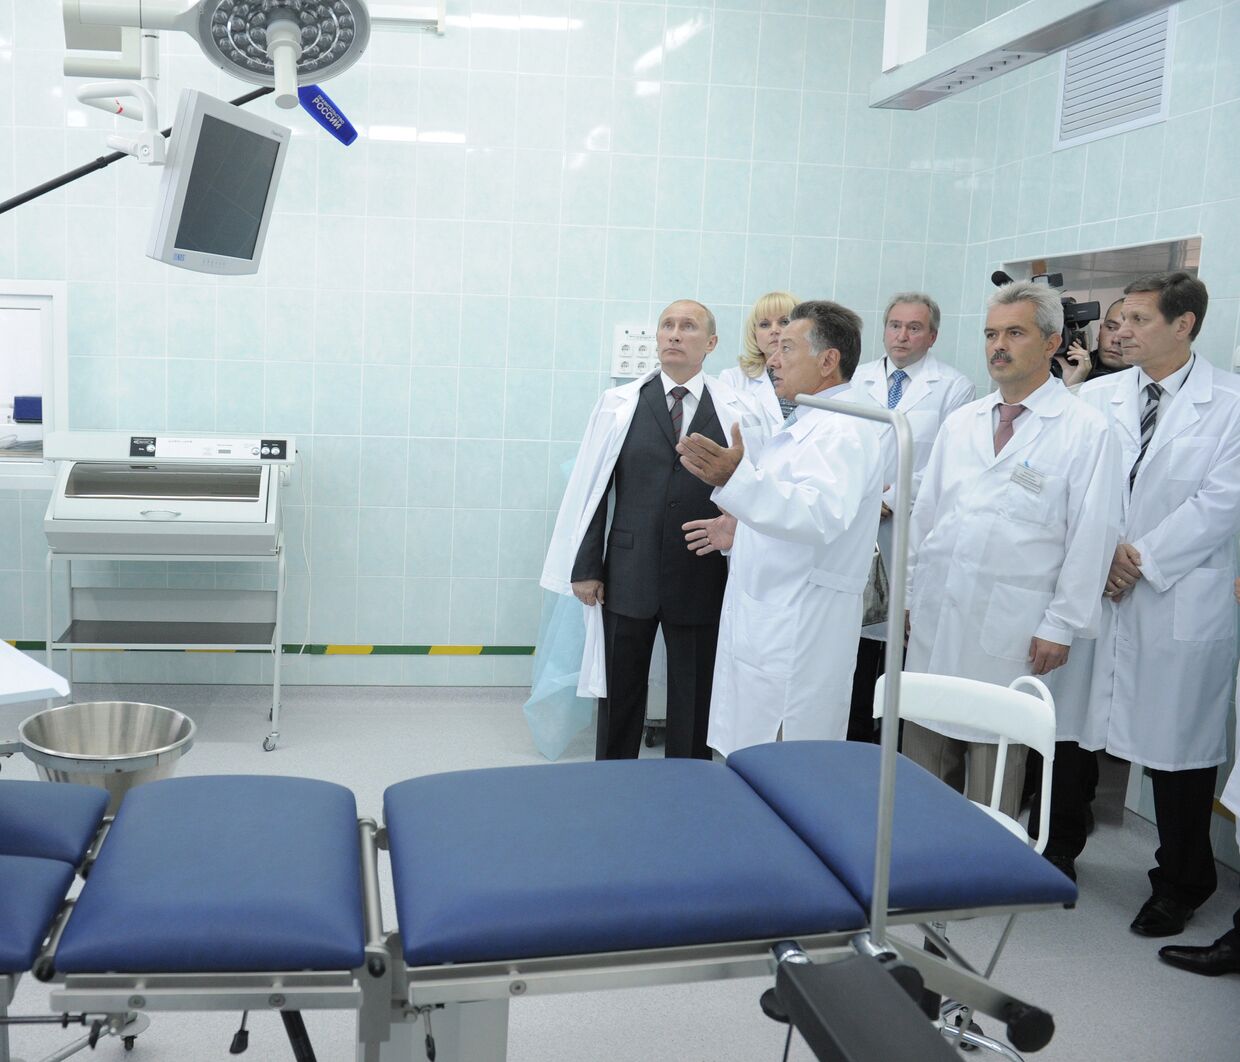 Посещение В. Путиным Смоленской областной клинической больницы